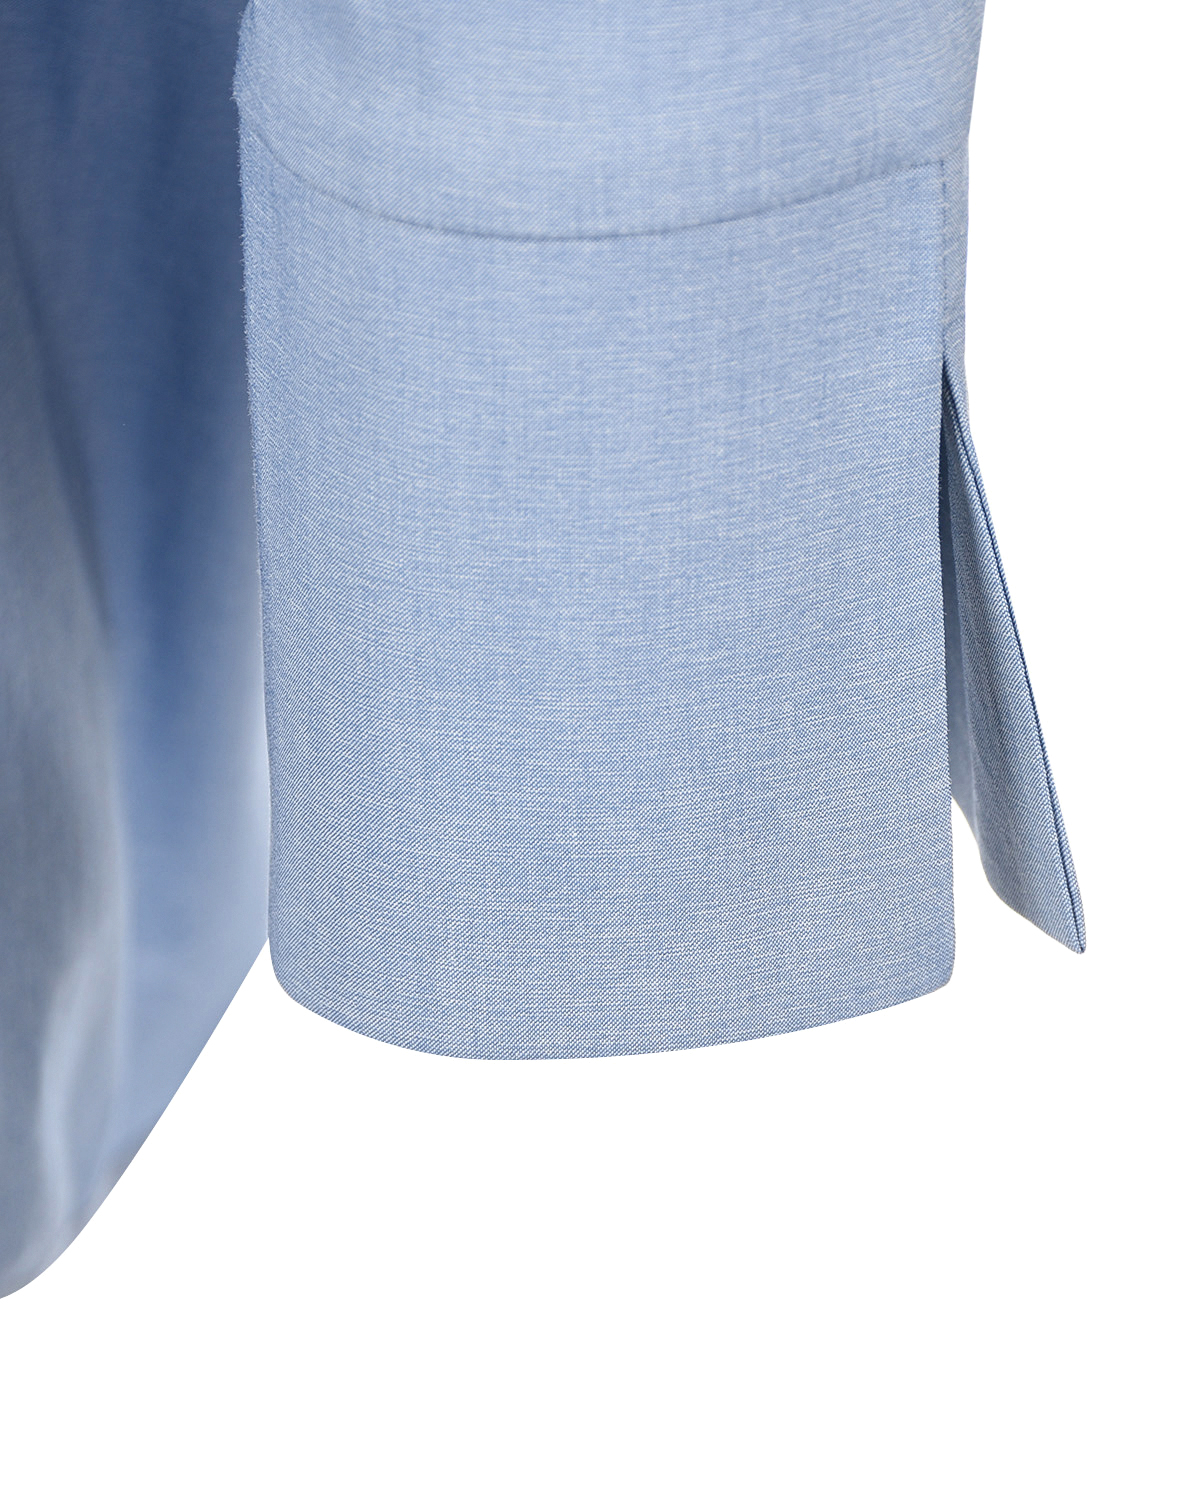 Синяя блуза с рукавами 3/4 Attesa, размер 38, цвет синий Синяя блуза с рукавами 3/4 Attesa - фото 3